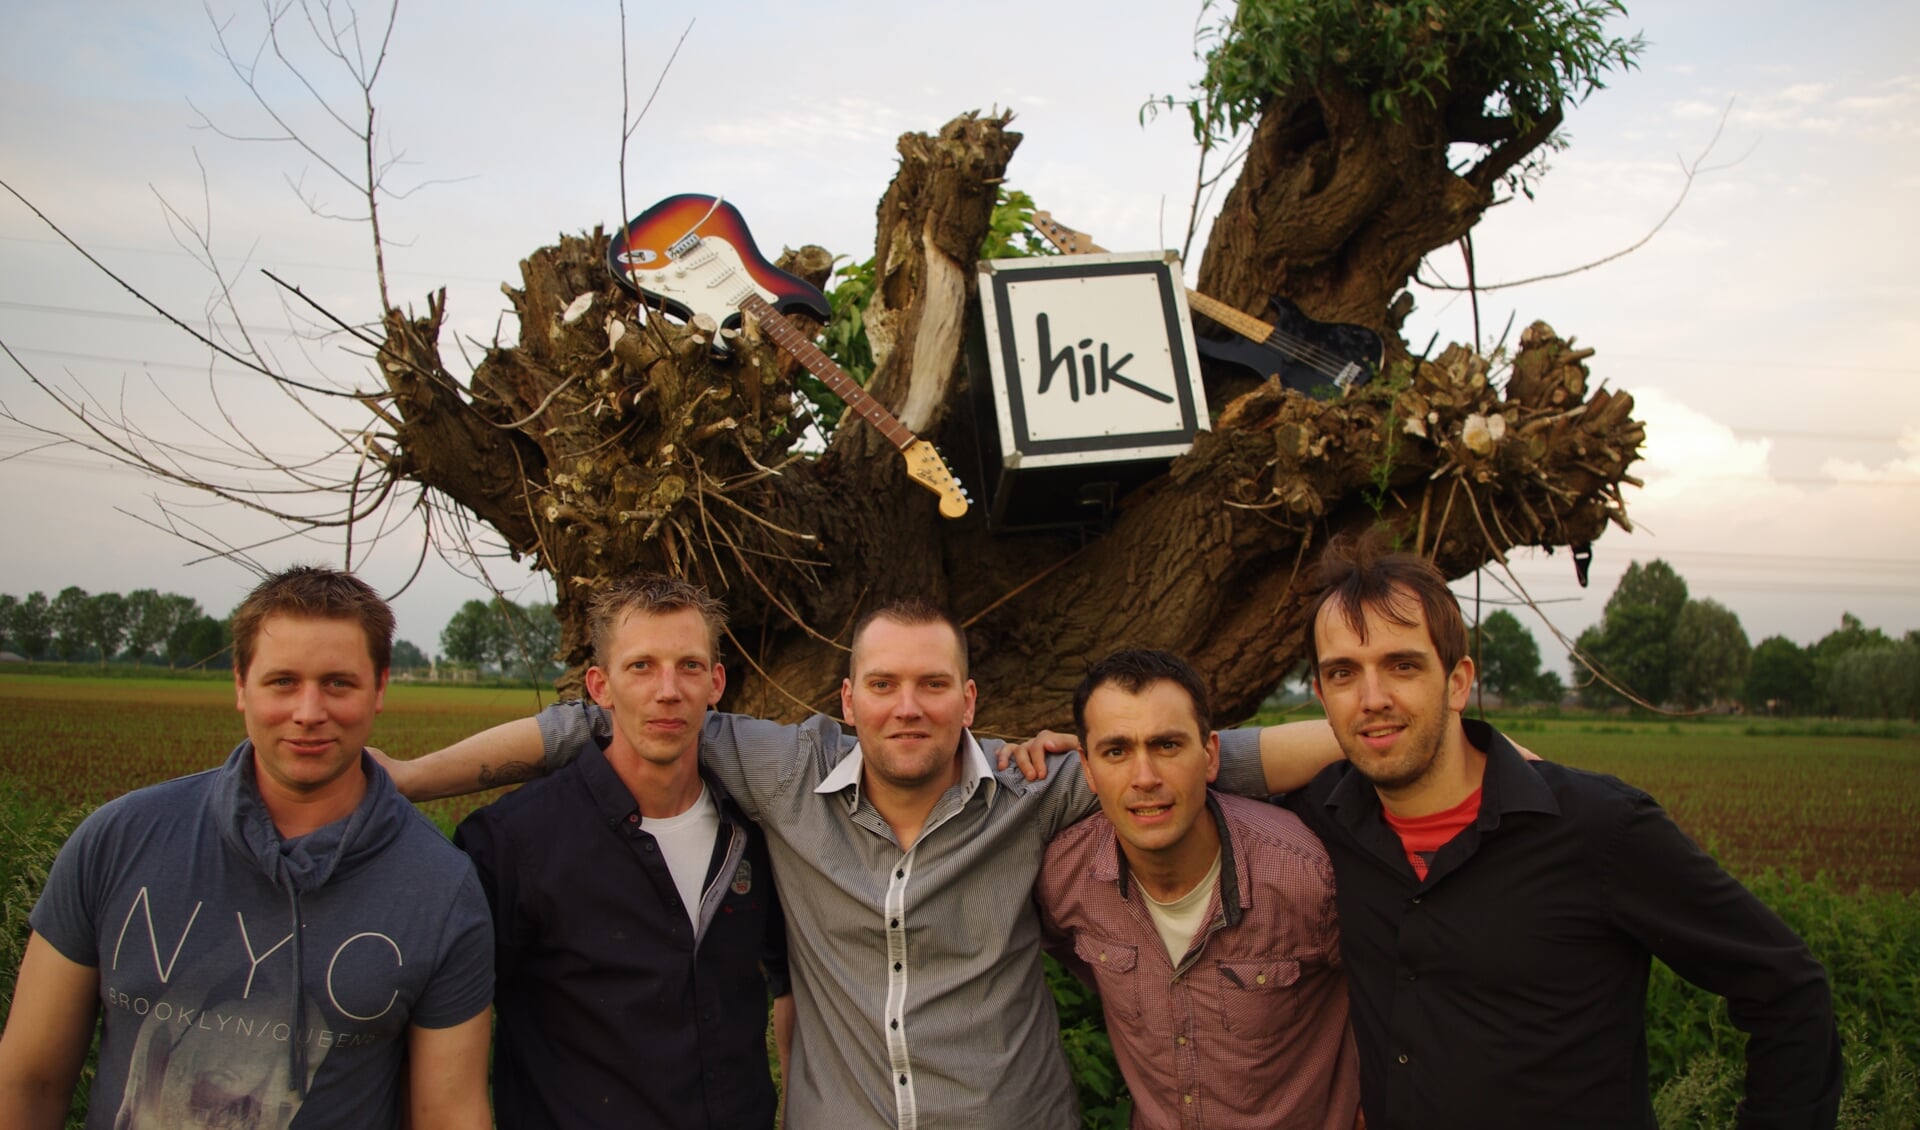 De band HIK uit Hummelo treedt op bij Heezen. Foto: PR